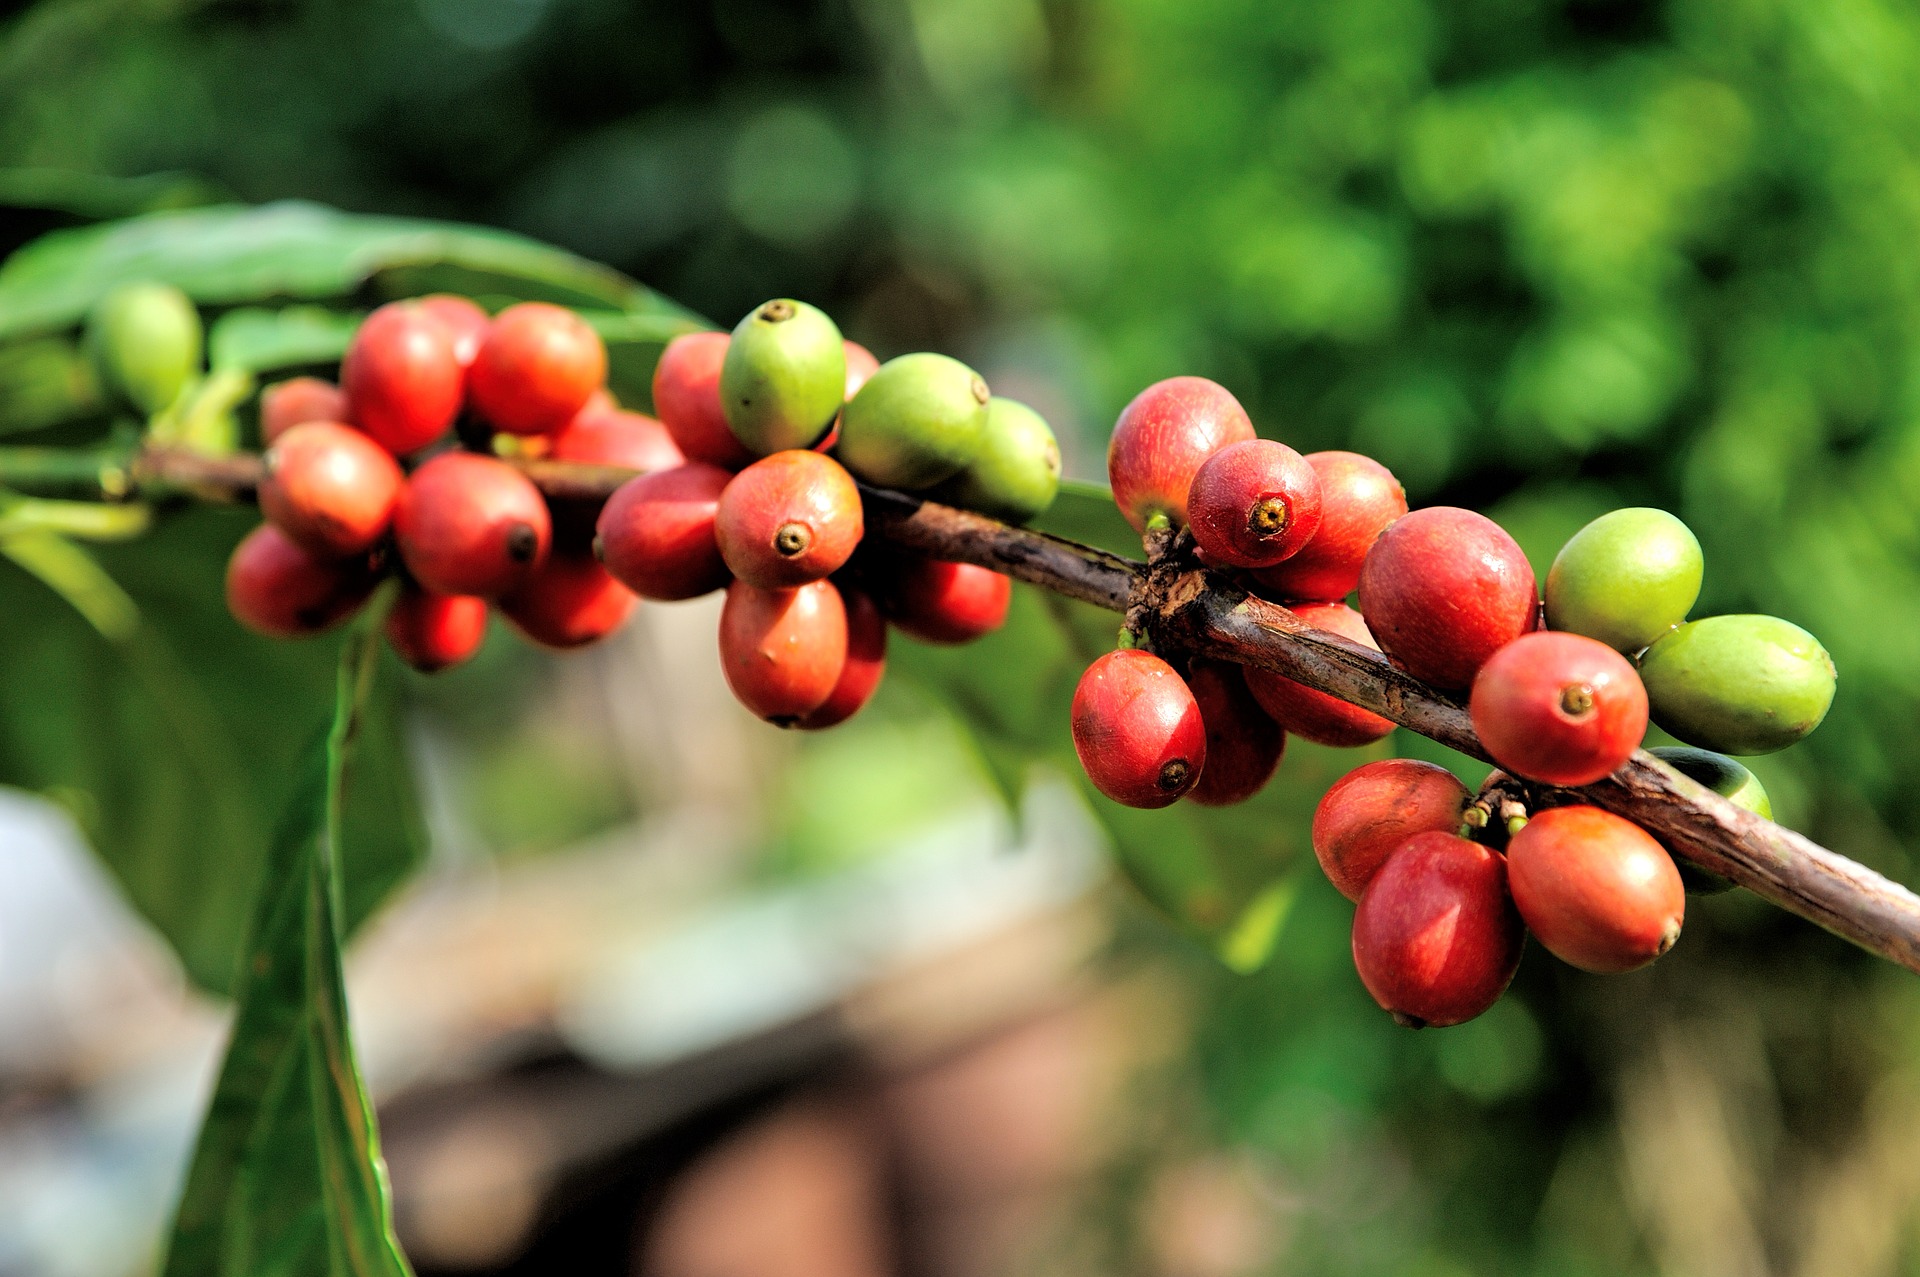 Plody kávovníku tvoří červené boby / zdroj: pixabay.com